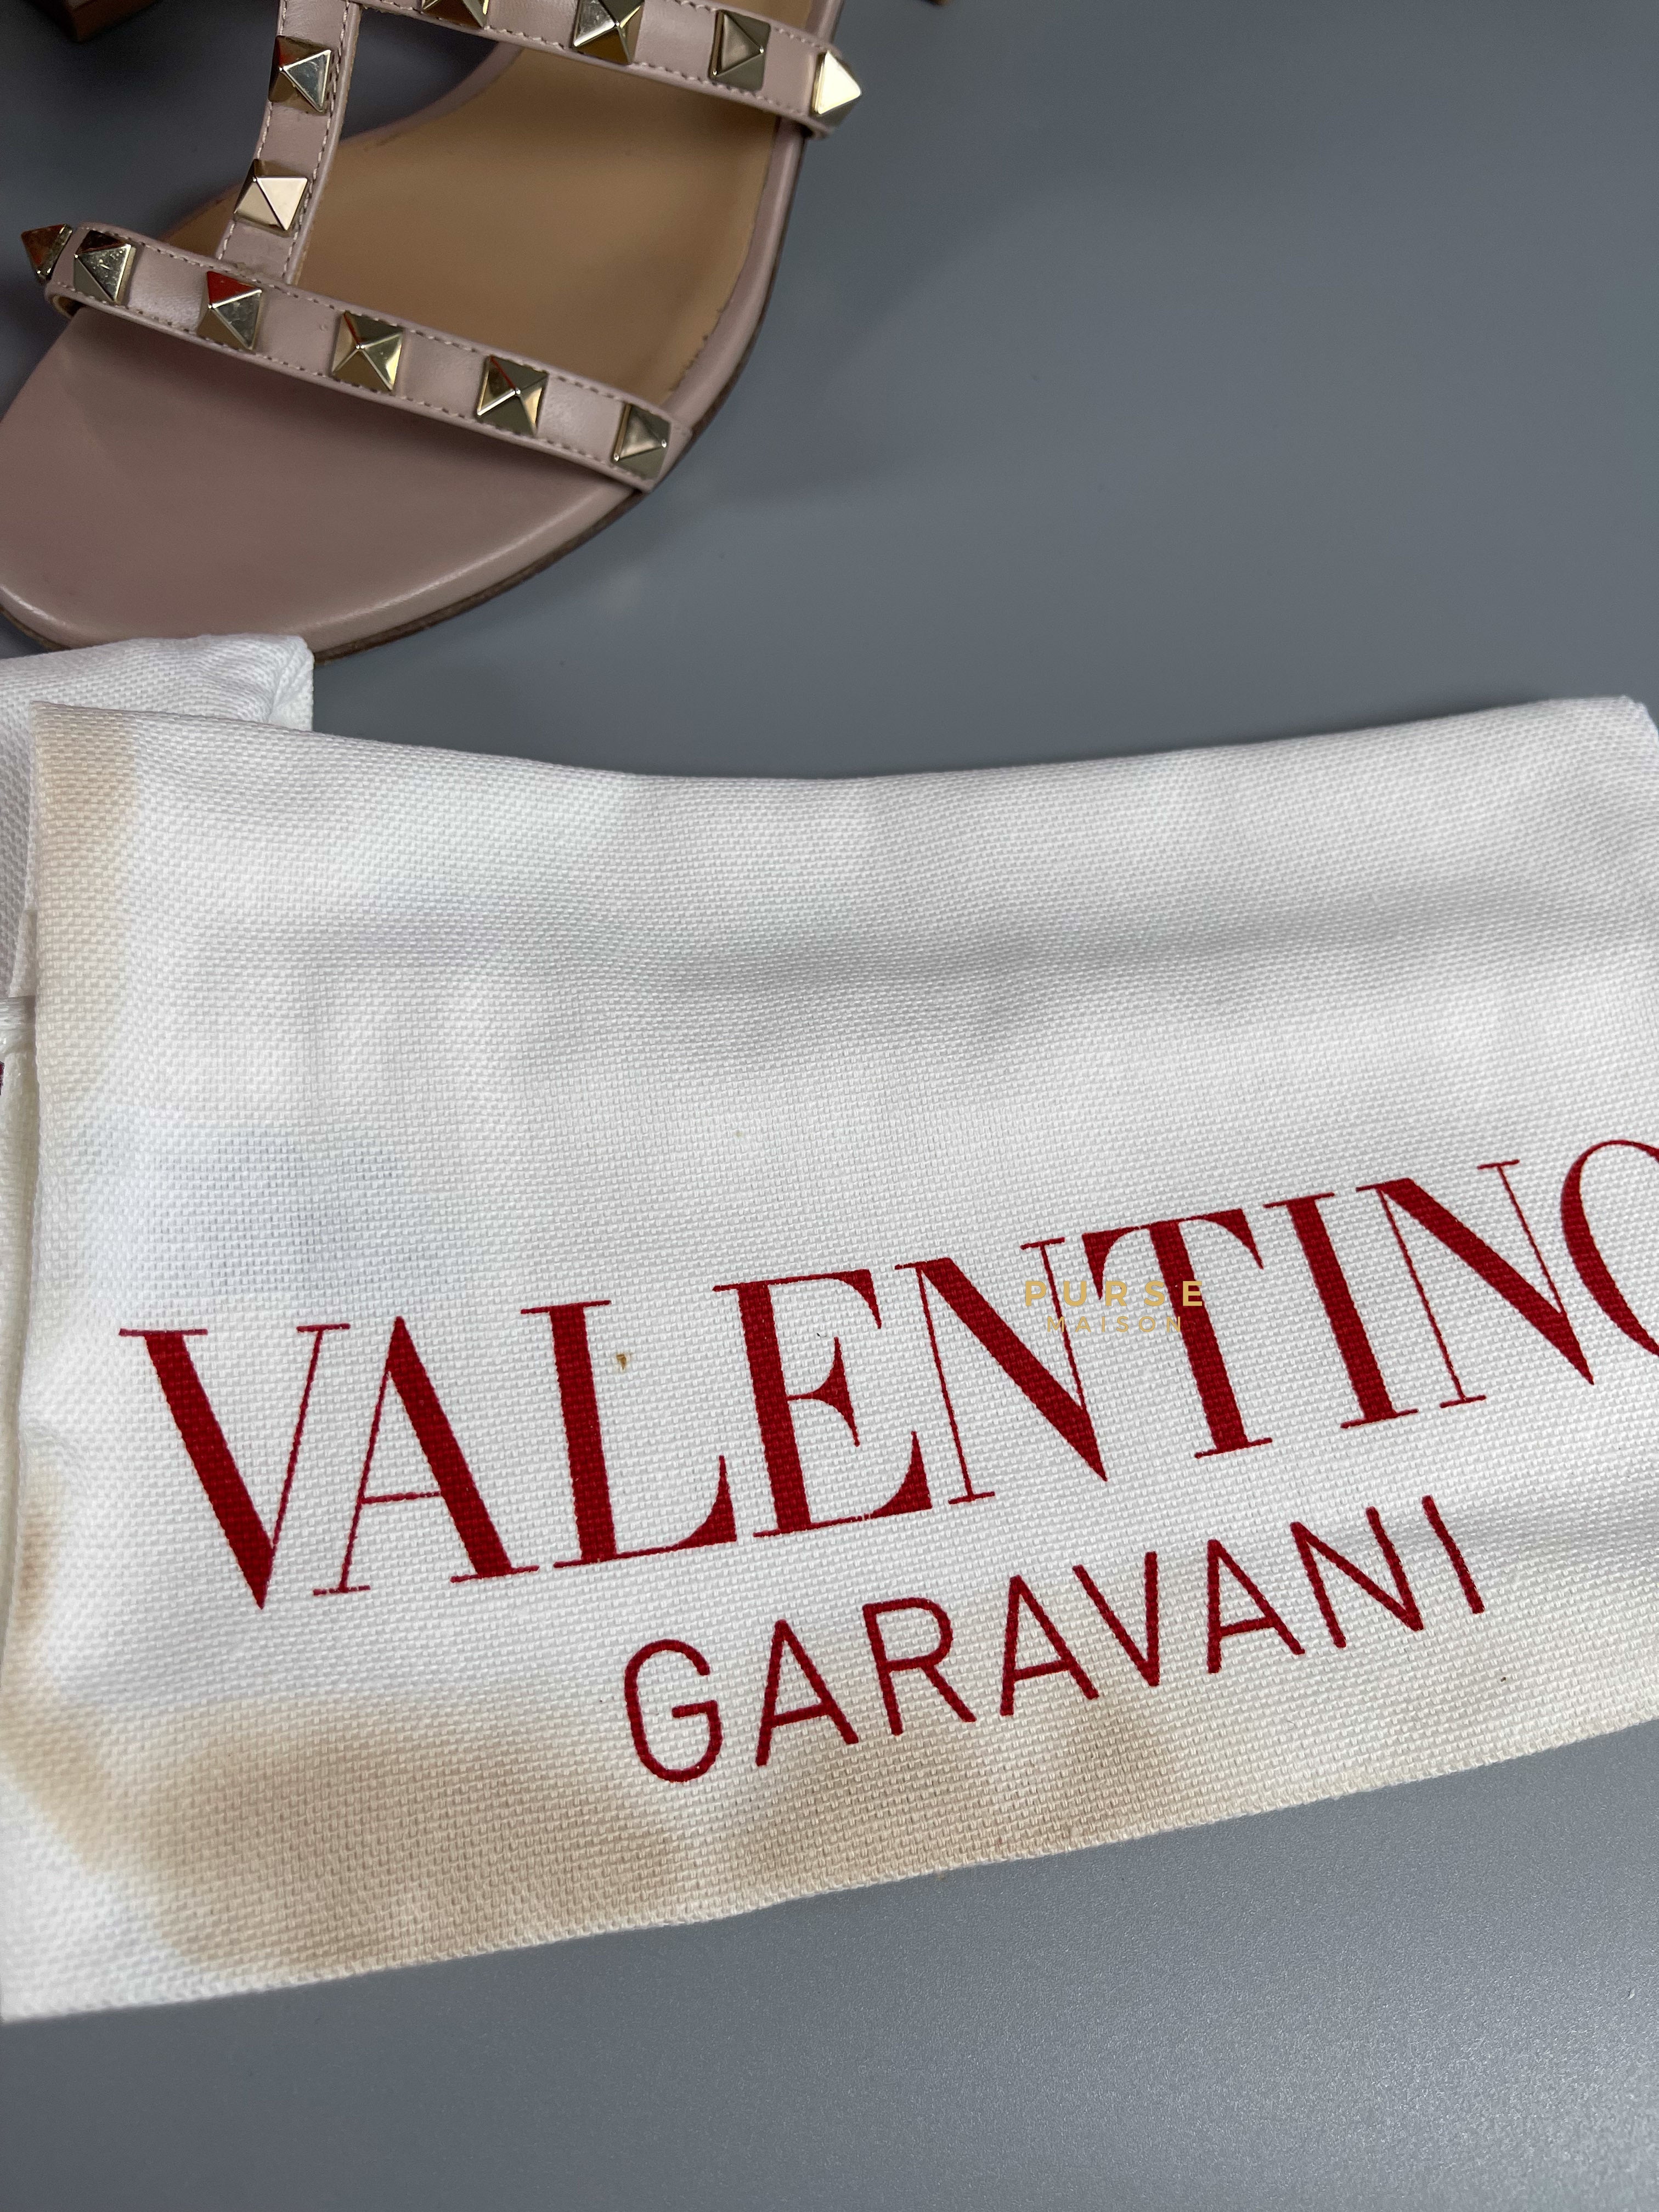 Valentino Garavani Rockstud Poudre Sandals with Heels Size 36.5 EU (23.5 cm) | Purse Maison Luxury Bags Shop